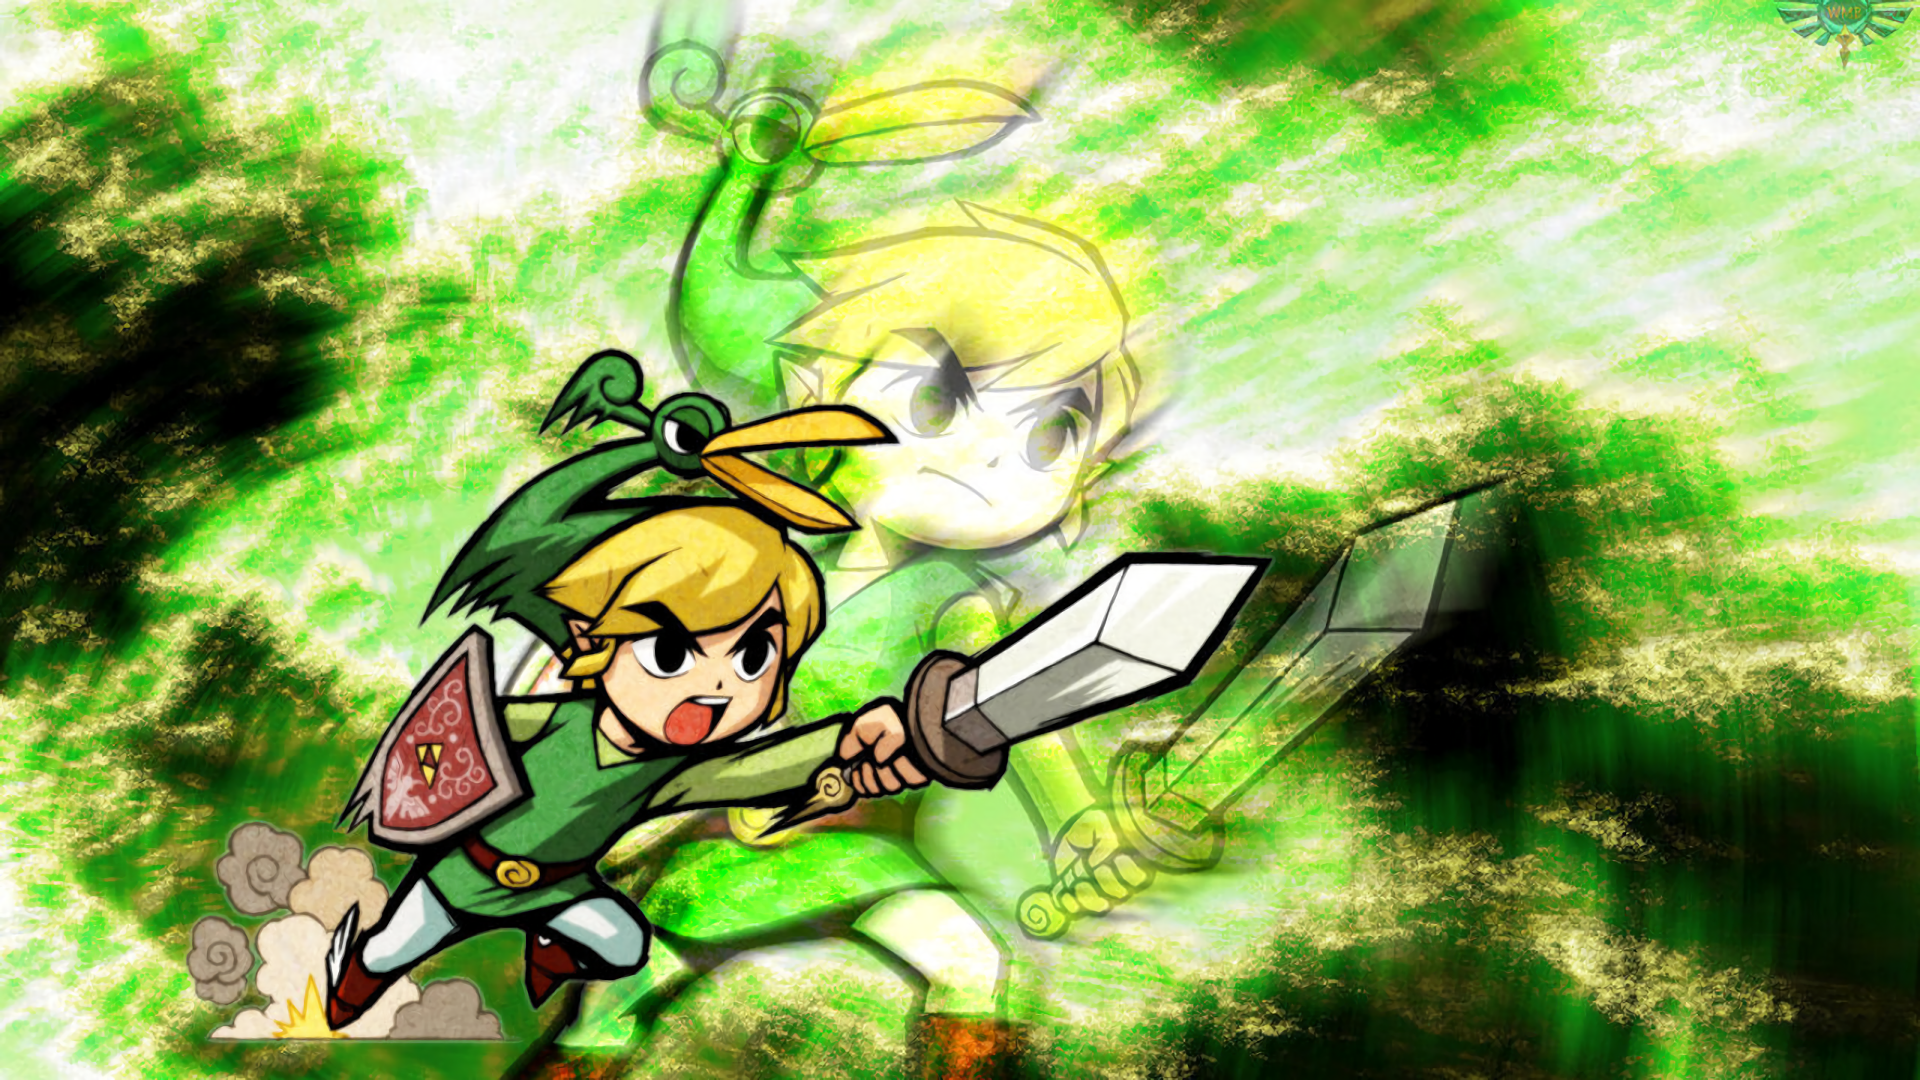 download The Legend of Zelda: The Minish Cap